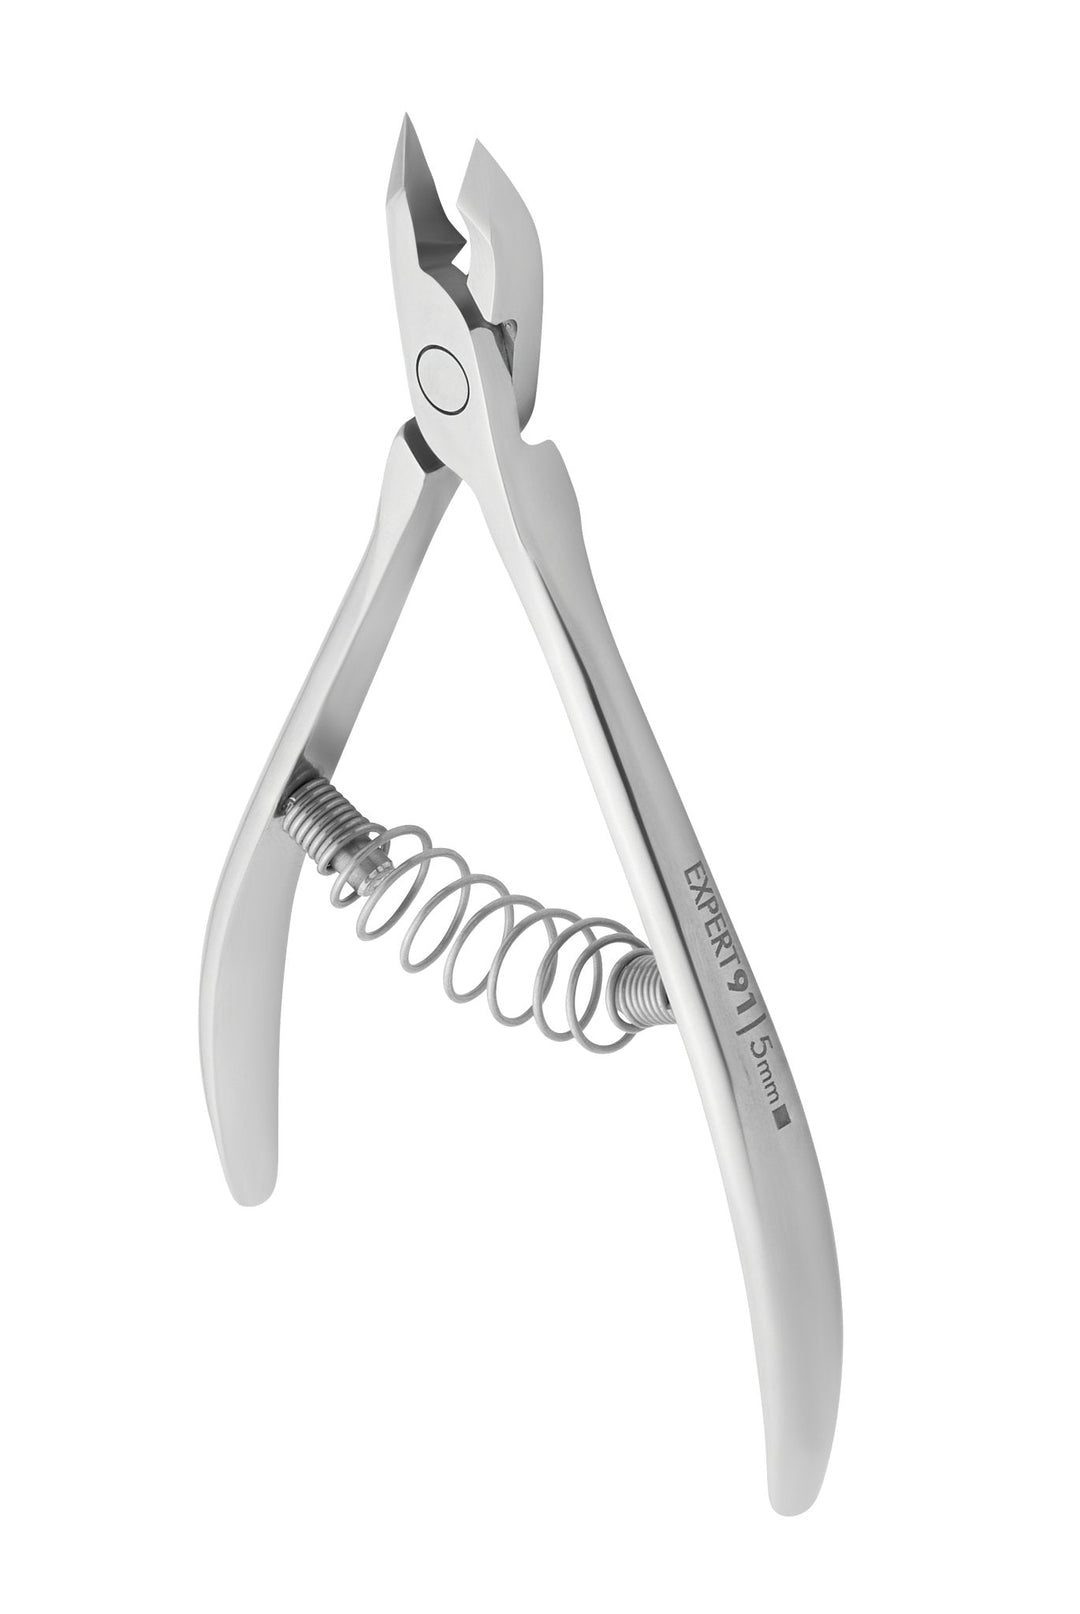 Staleks Cuticle Nipper Expert 91 - 5 mm Jaw | U-tools